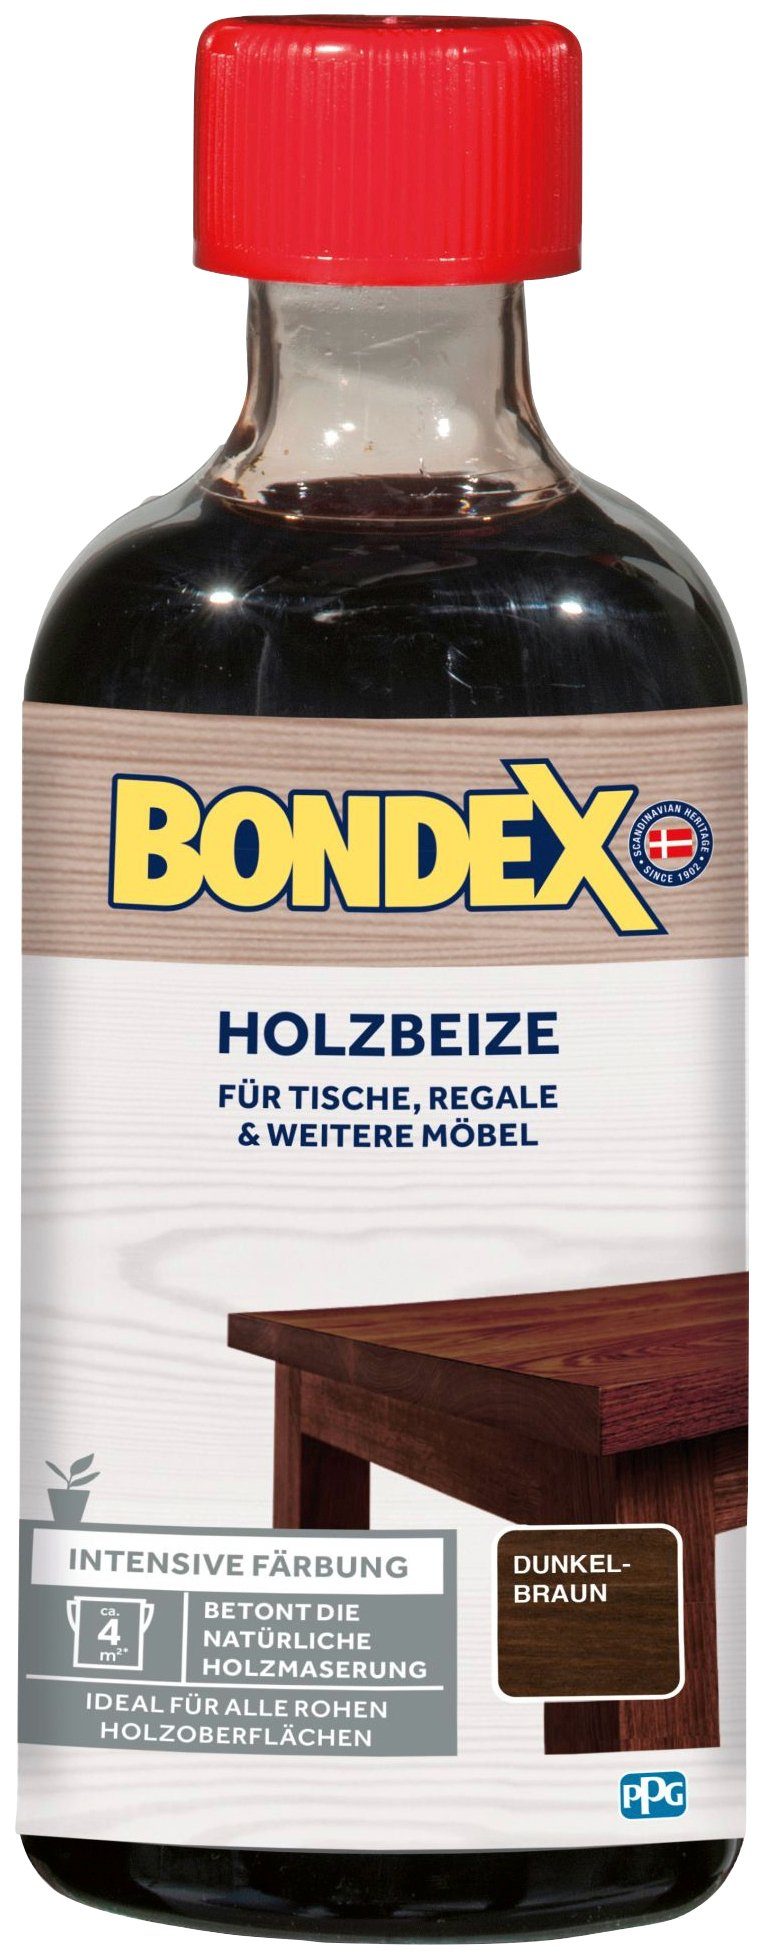 Bondex Lasur HOLZBEIZE, dunkelbraun & Regale für Färbung, Möbel, weitere l intensive Tische, 0,25